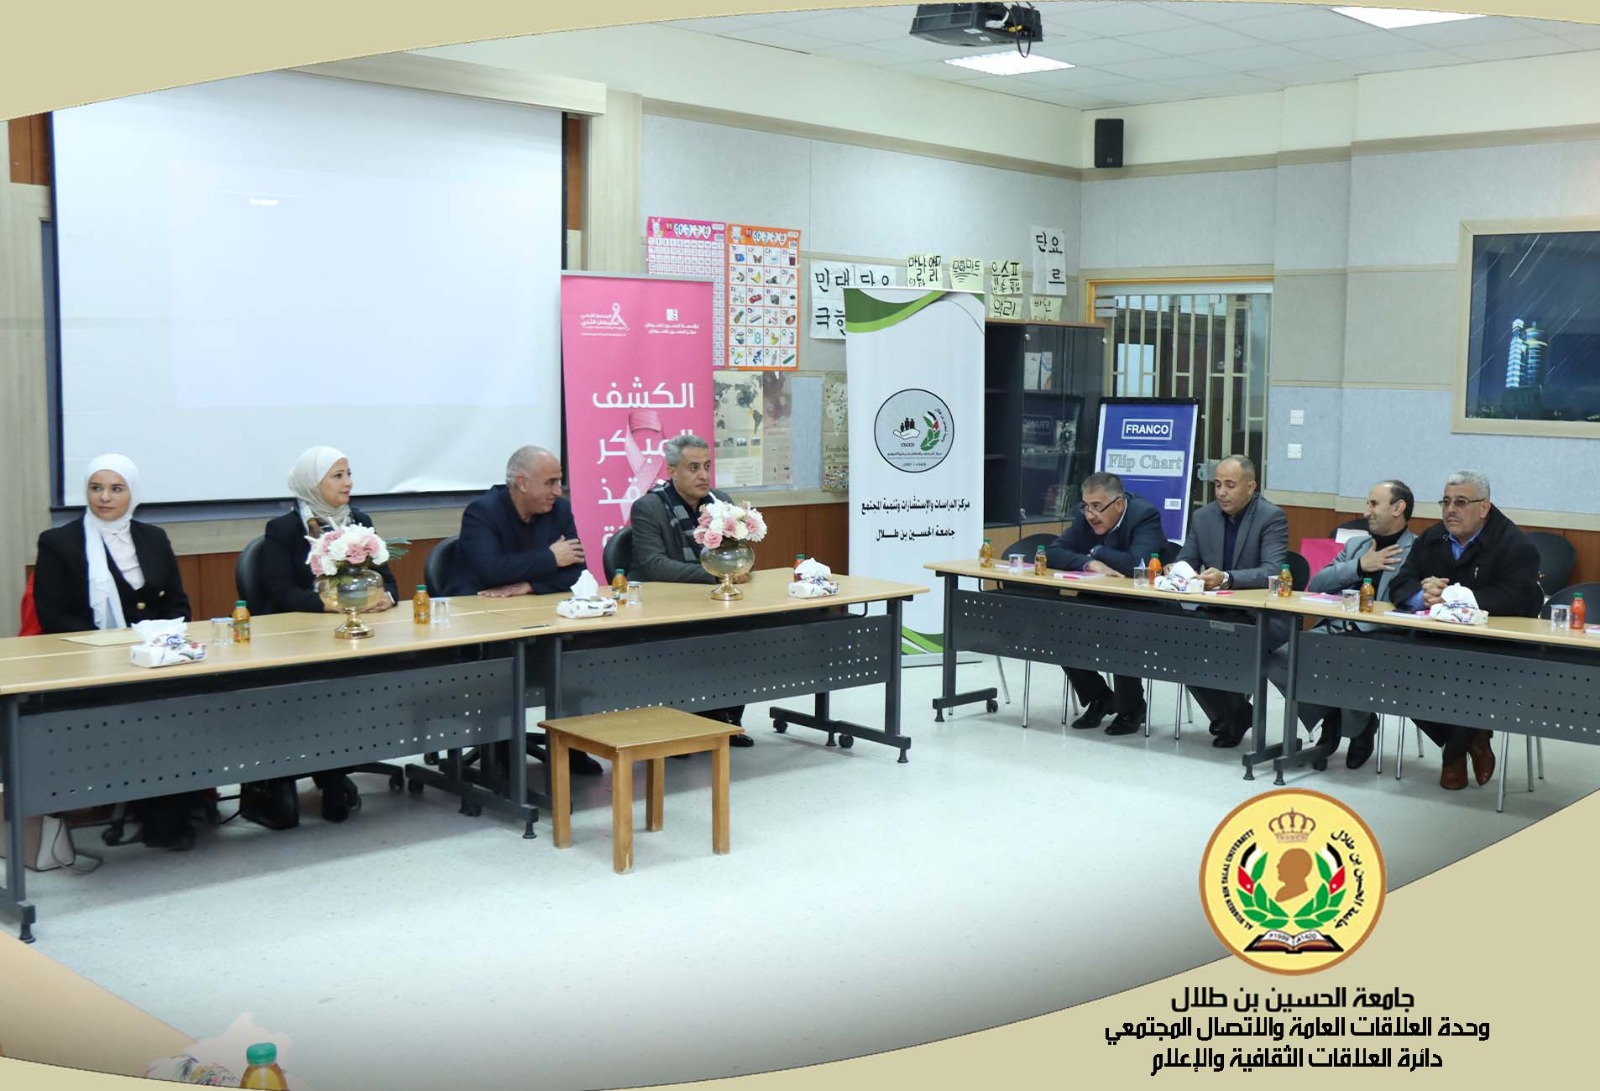 اتفاقية تعاون وجلسة حوارية للتوعية من مرض السرطان في جامعة الحسين بن طلال